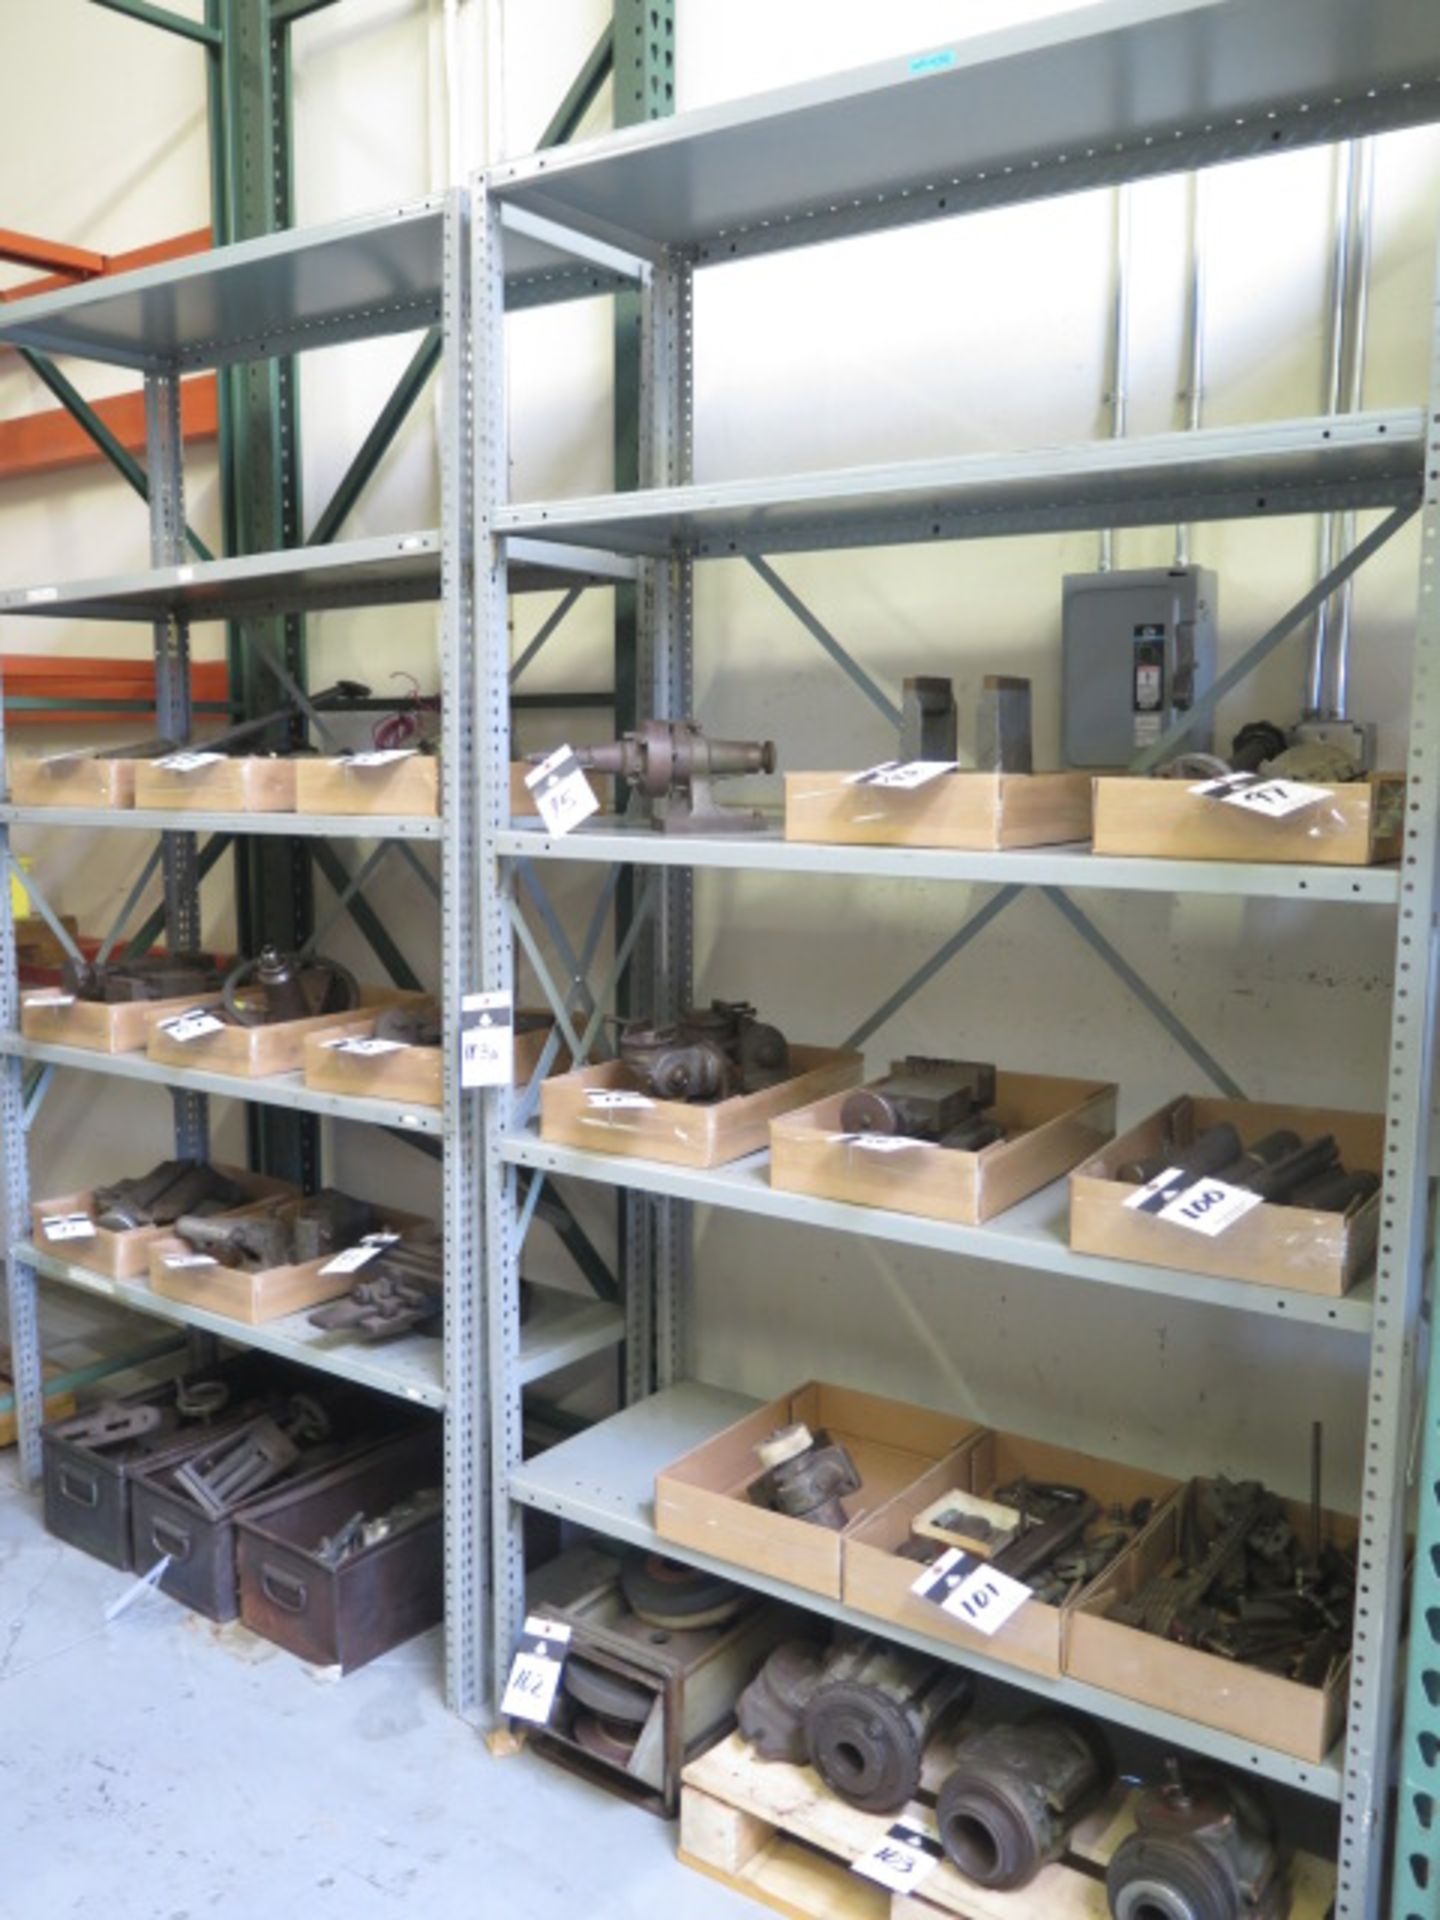 Shelves (2)